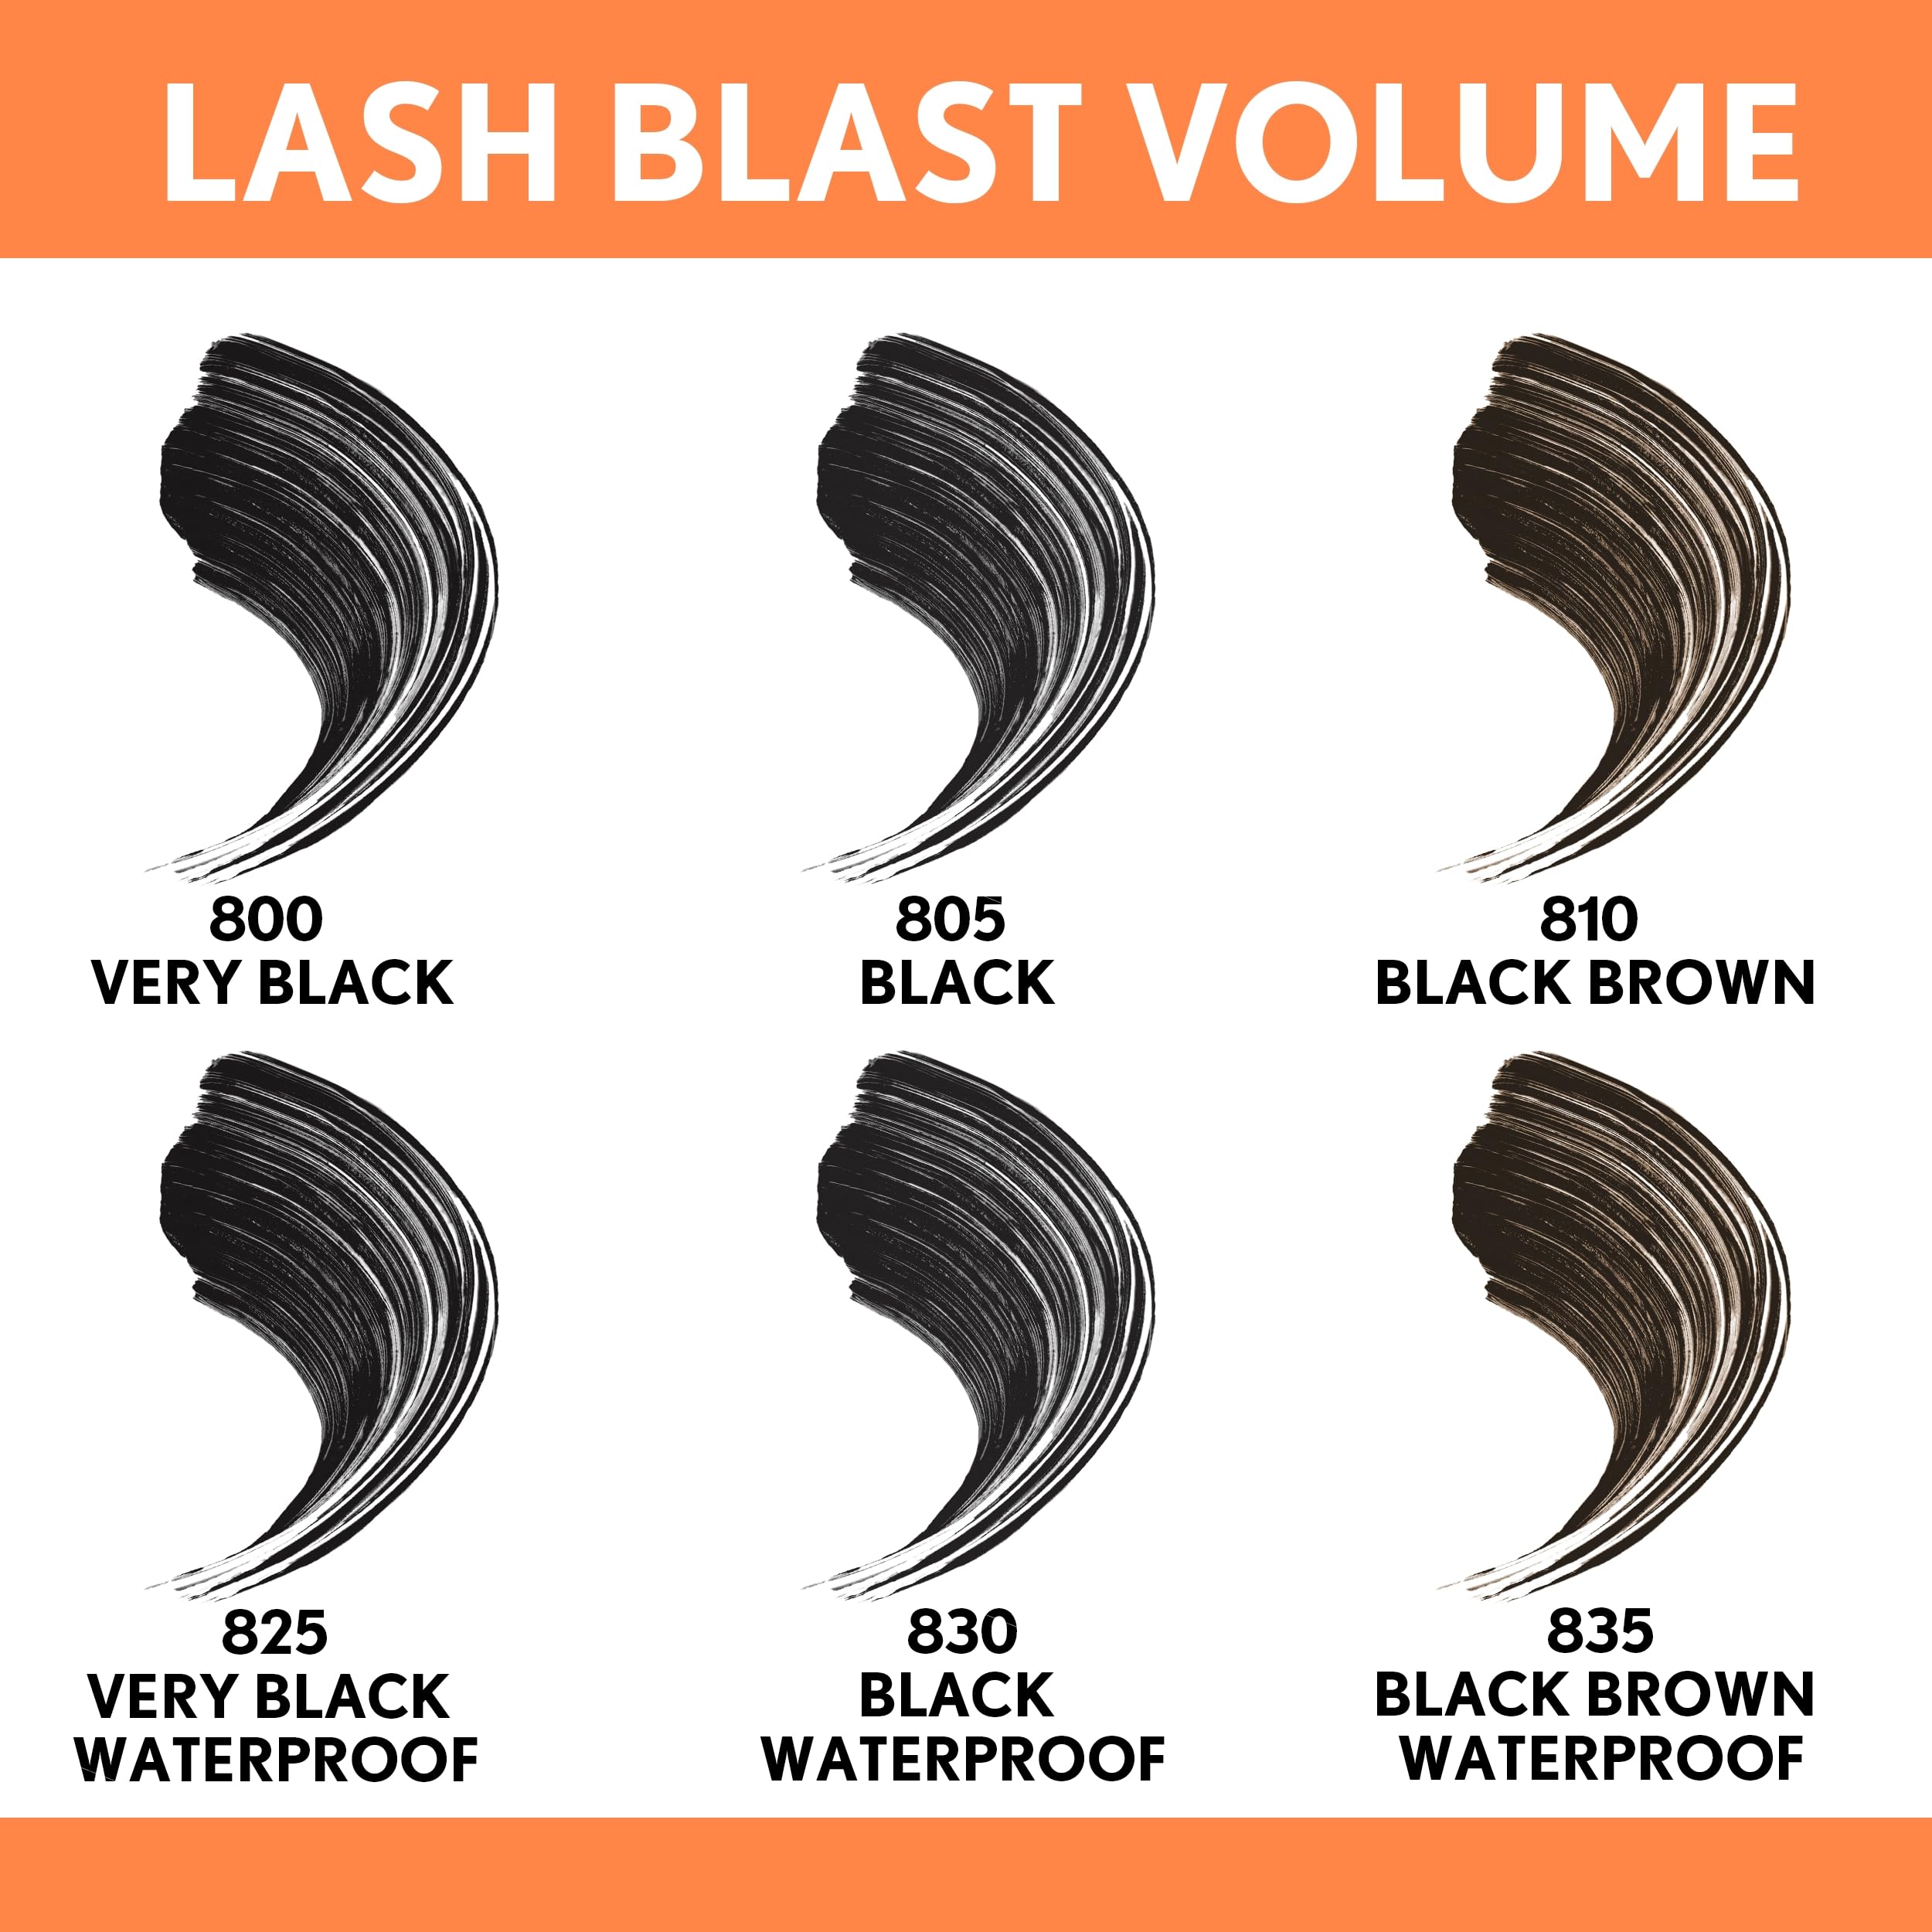 Covergirl Lash Blast Volume Waterproof Mascara, Black Brown